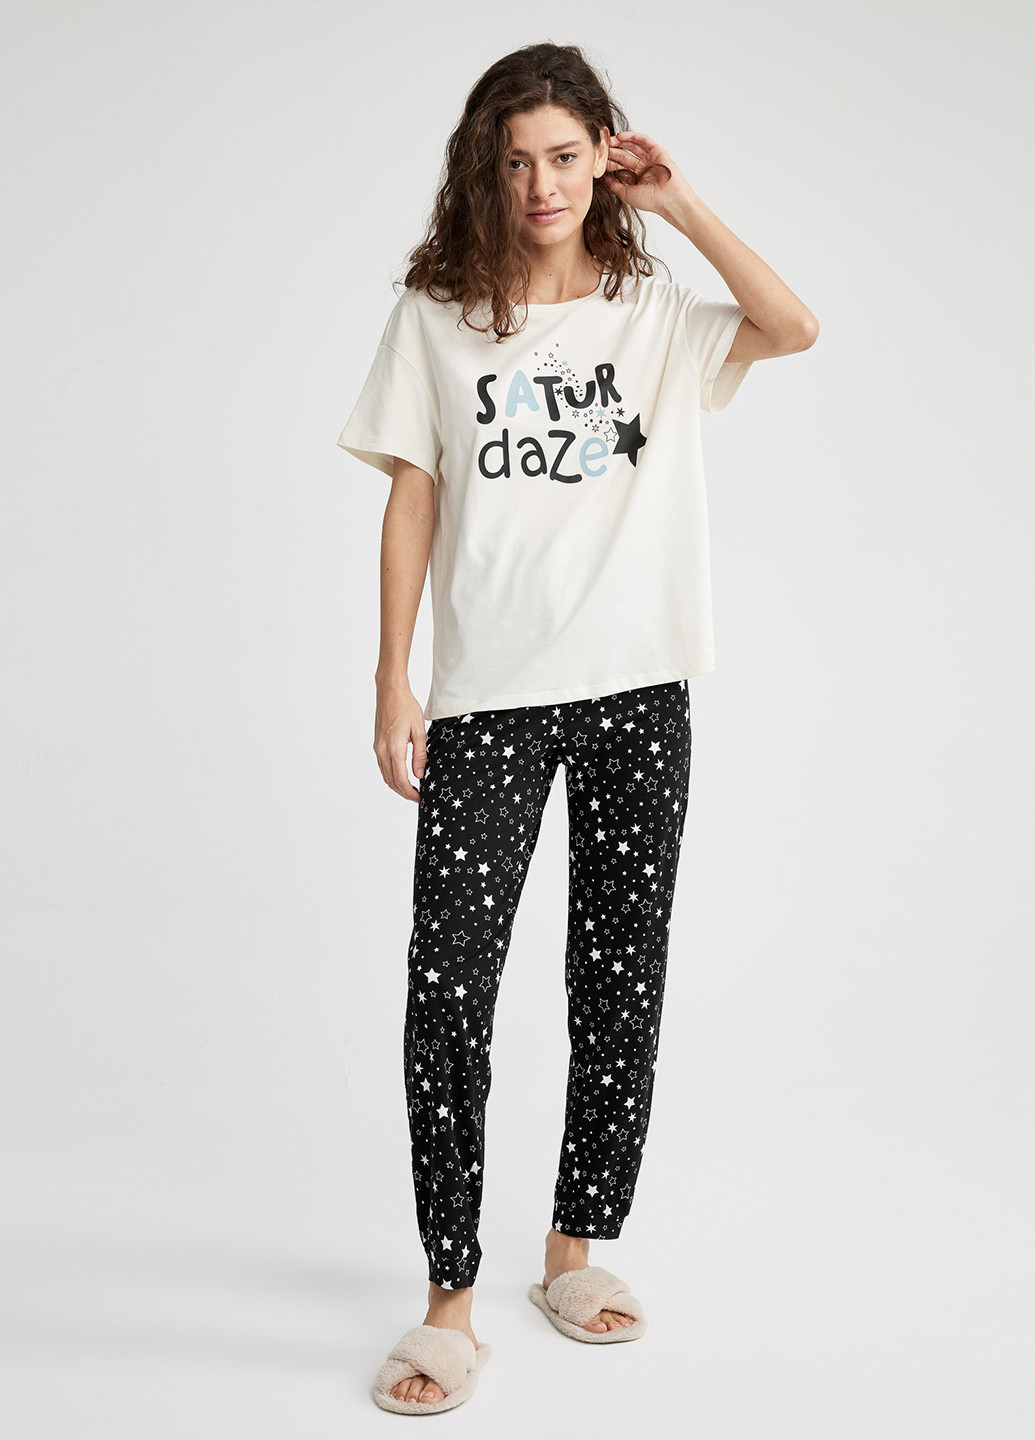 Комбинированная всесезон пижама (футболка, брюки) футболка + брюки DeFacto